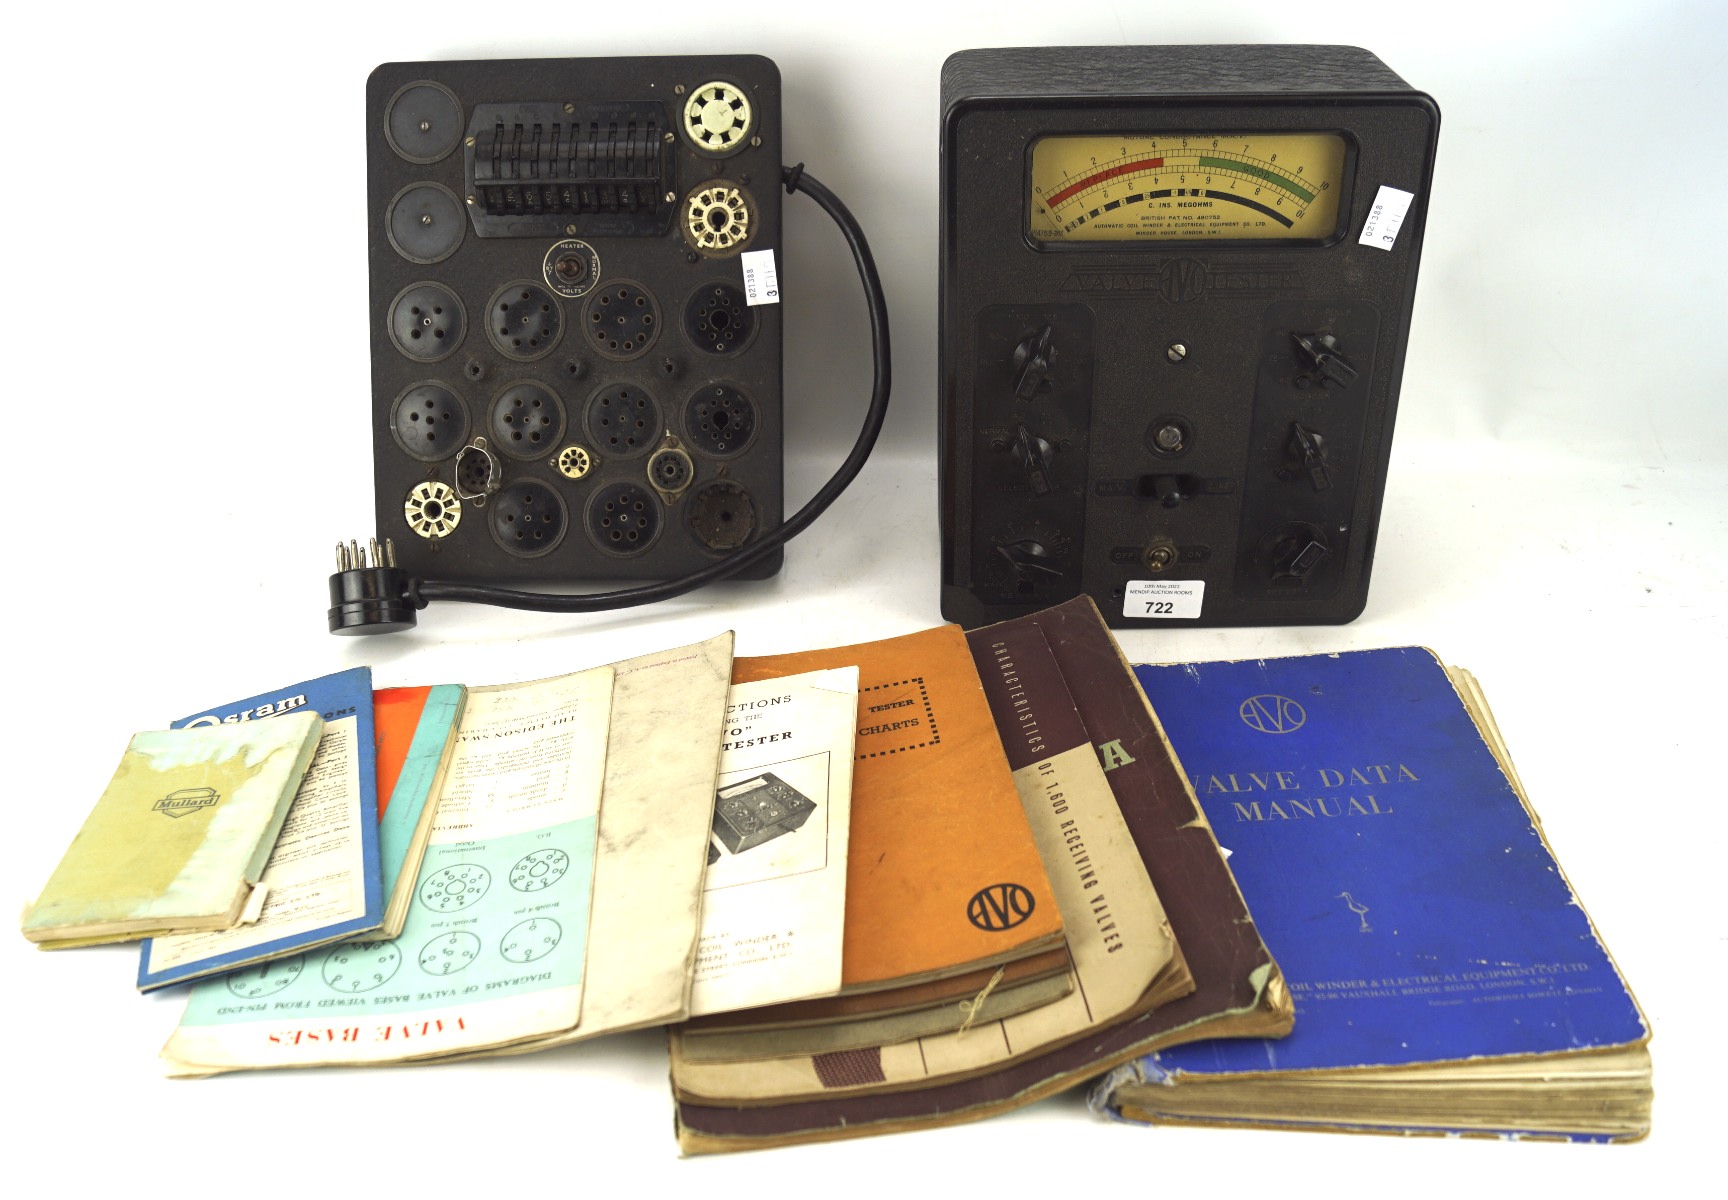 An AVO bakelite cased radio valve tester and related equipment,